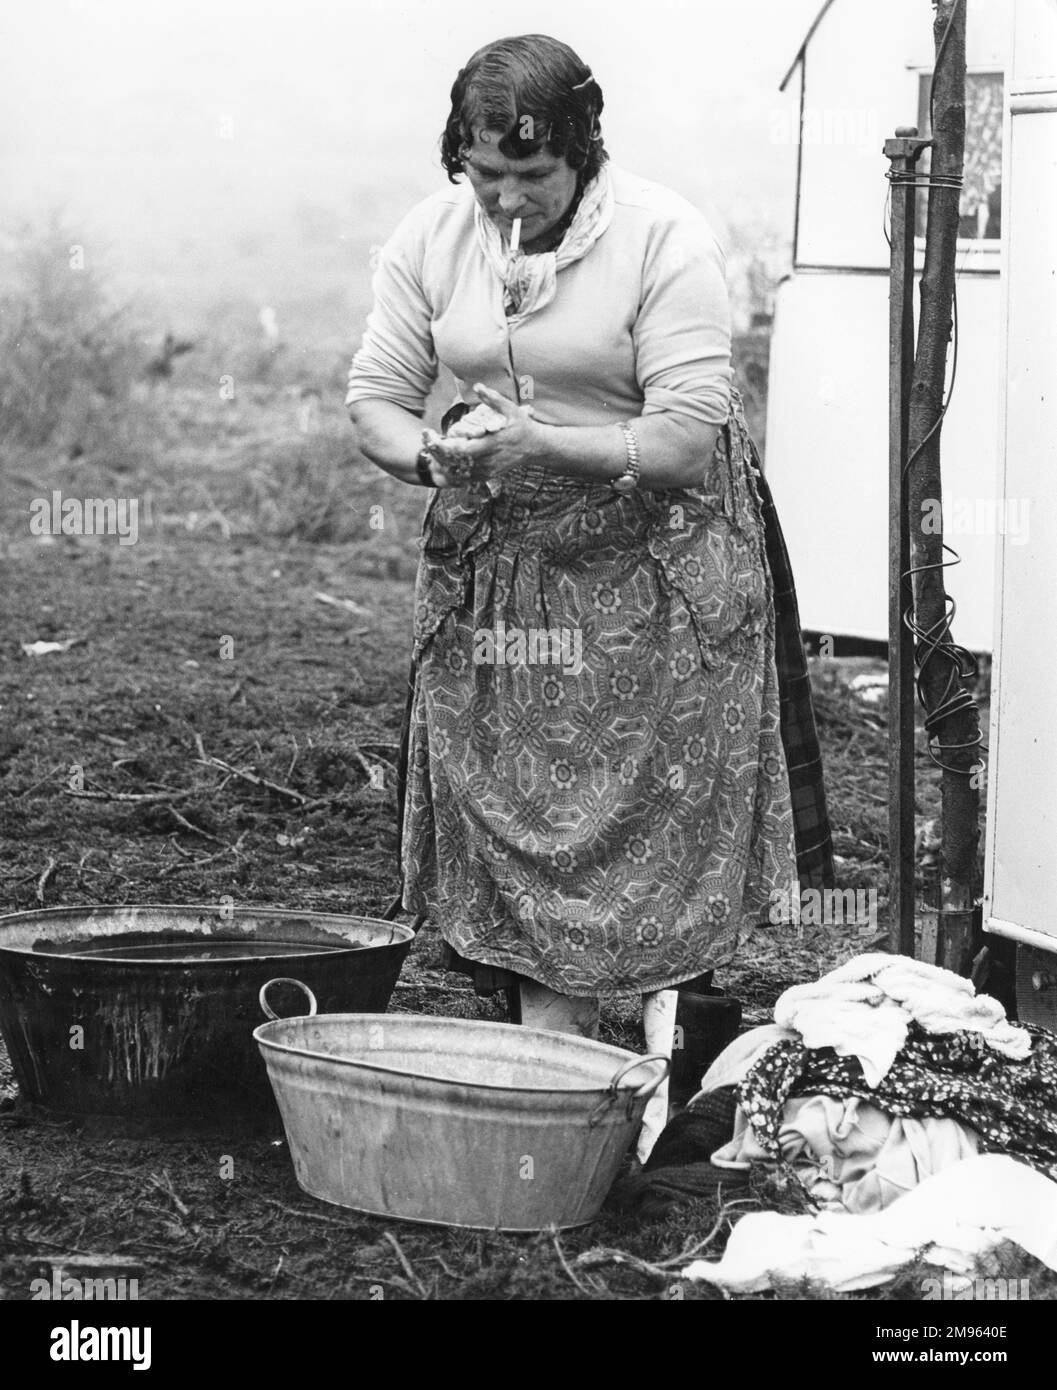 Eine alte Zigeunerin trägt eine Schürze und raucht eine Zigarette, frisst sich die Hände, während sie sich darauf vorbereitet, einen Haufen Kleider von Hand in einem Metallbecken zu waschen. Stockfoto